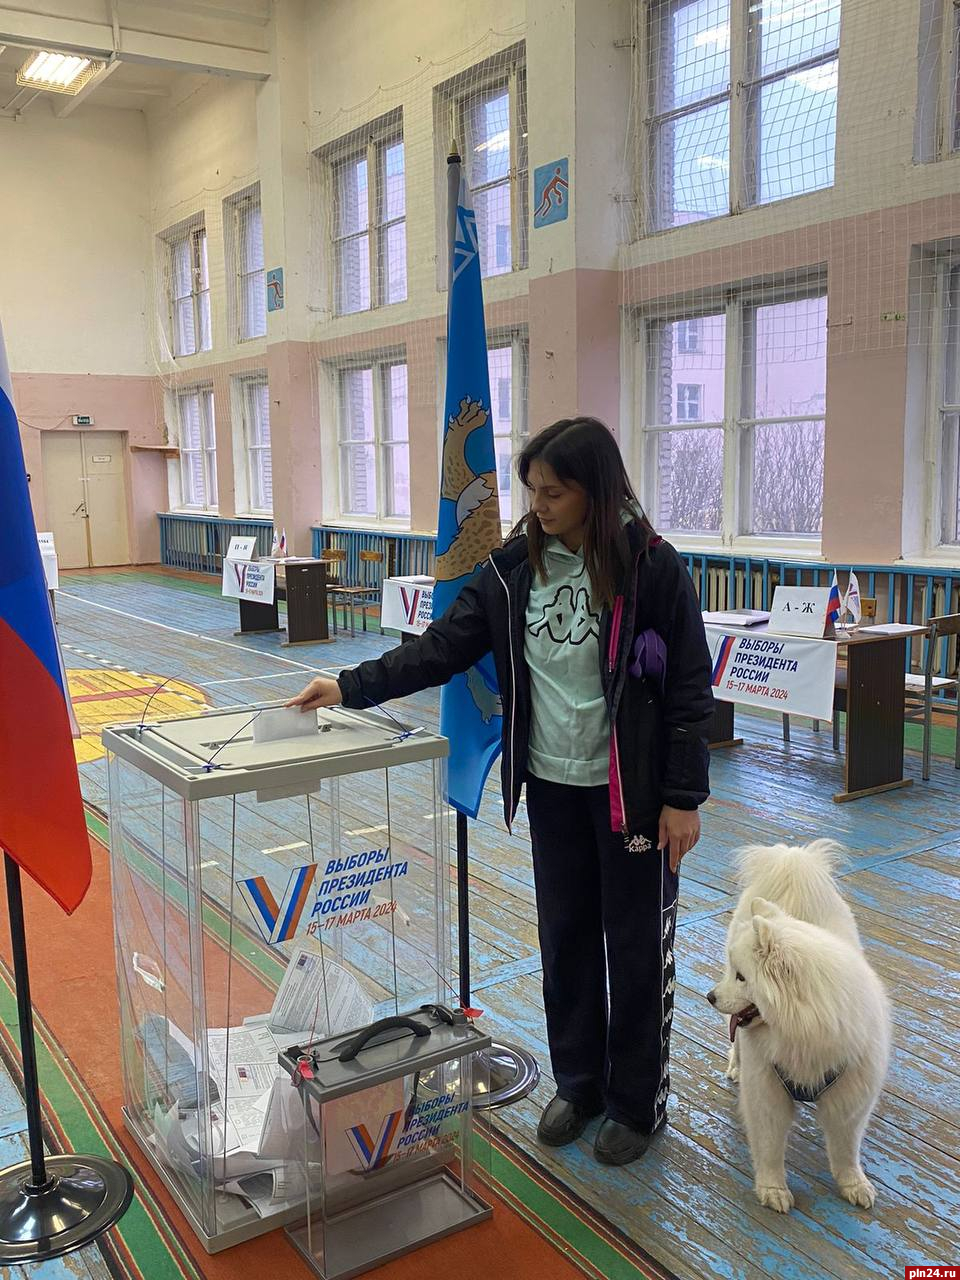 Явка на выборах президента России в Псковской области во второй день голосования составила 50%